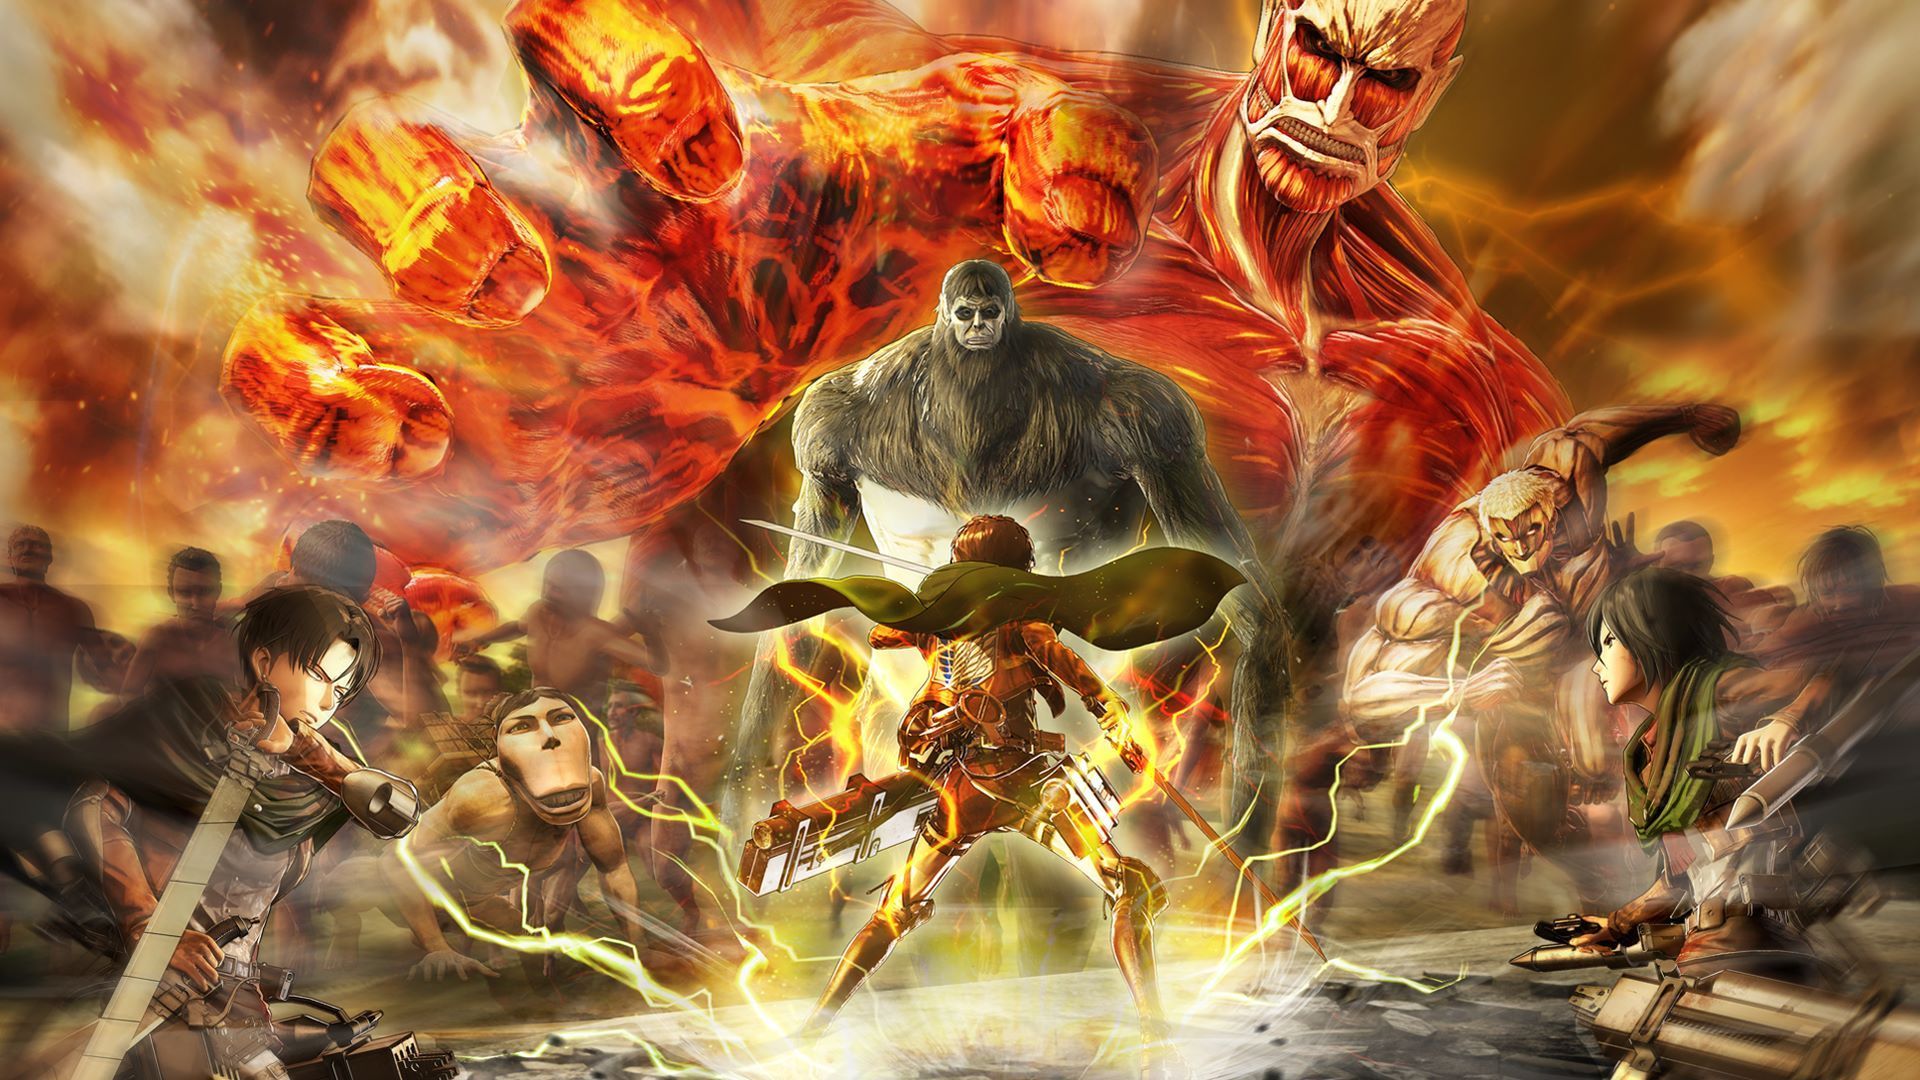 Attack on Titan 2: Final Battle ganha novos vídeos. Attack on titan season, Attack on titan, Attack on titan anime